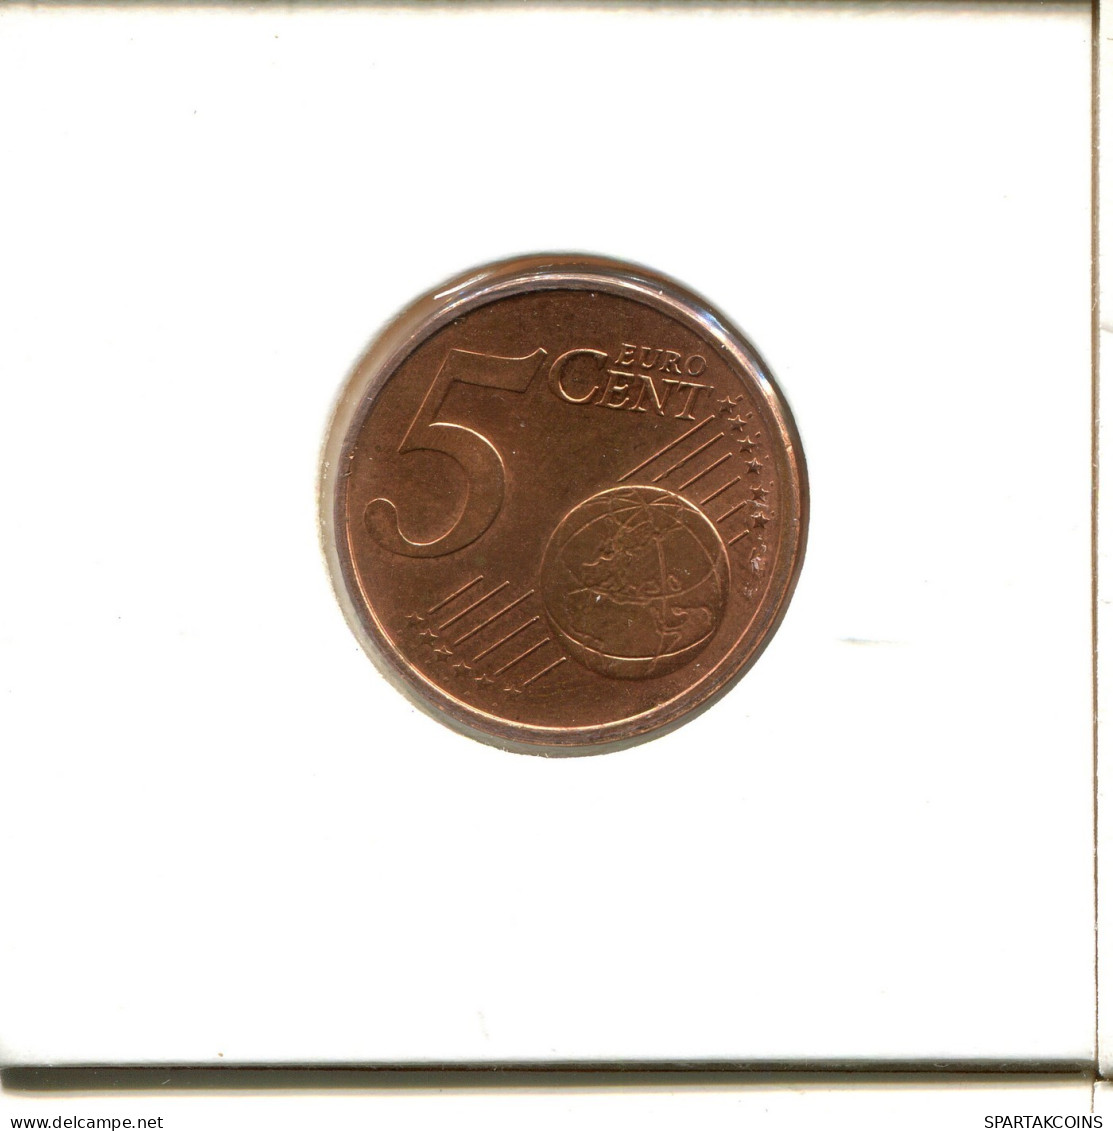 5 EURO CENTS 2012 GERMANY Coin #EU482.U.A - Germany